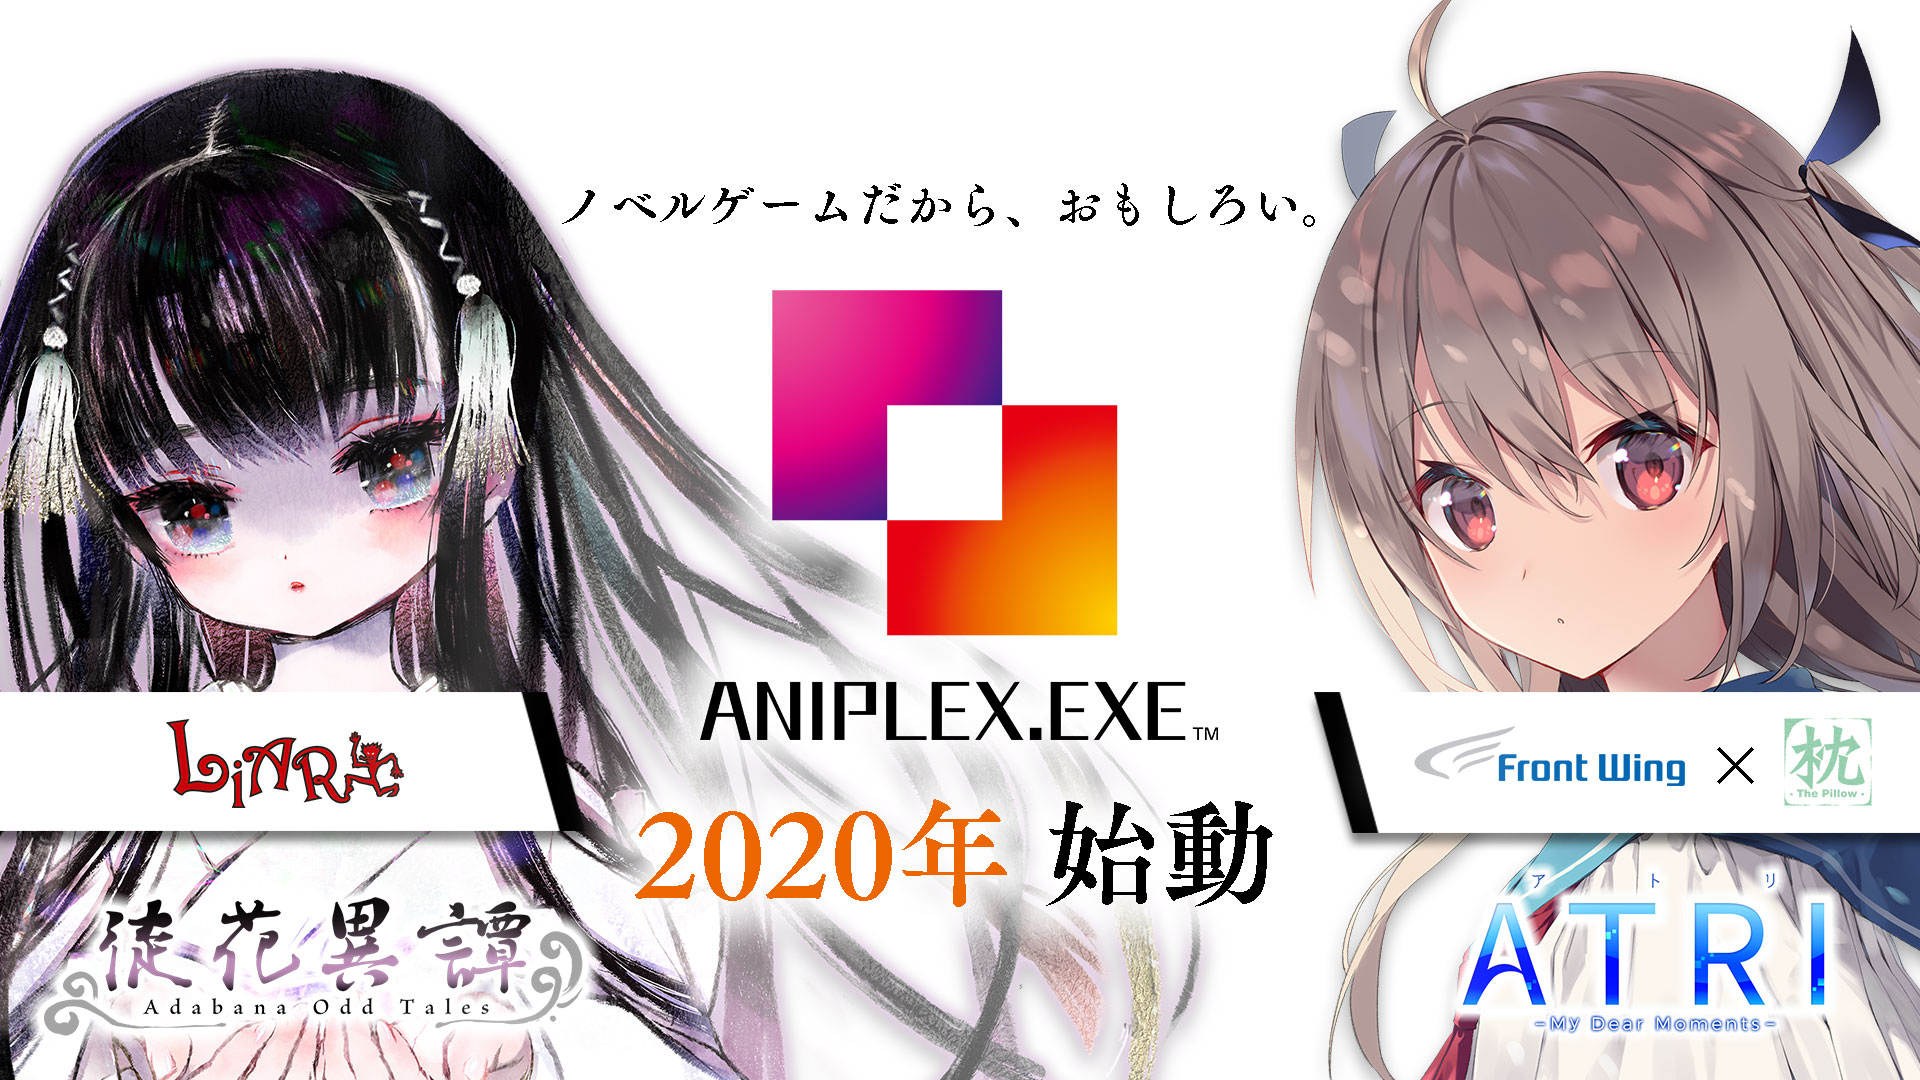 日本动画巨擘ANIPLEX进军游戏业 推出两款AVG游戏